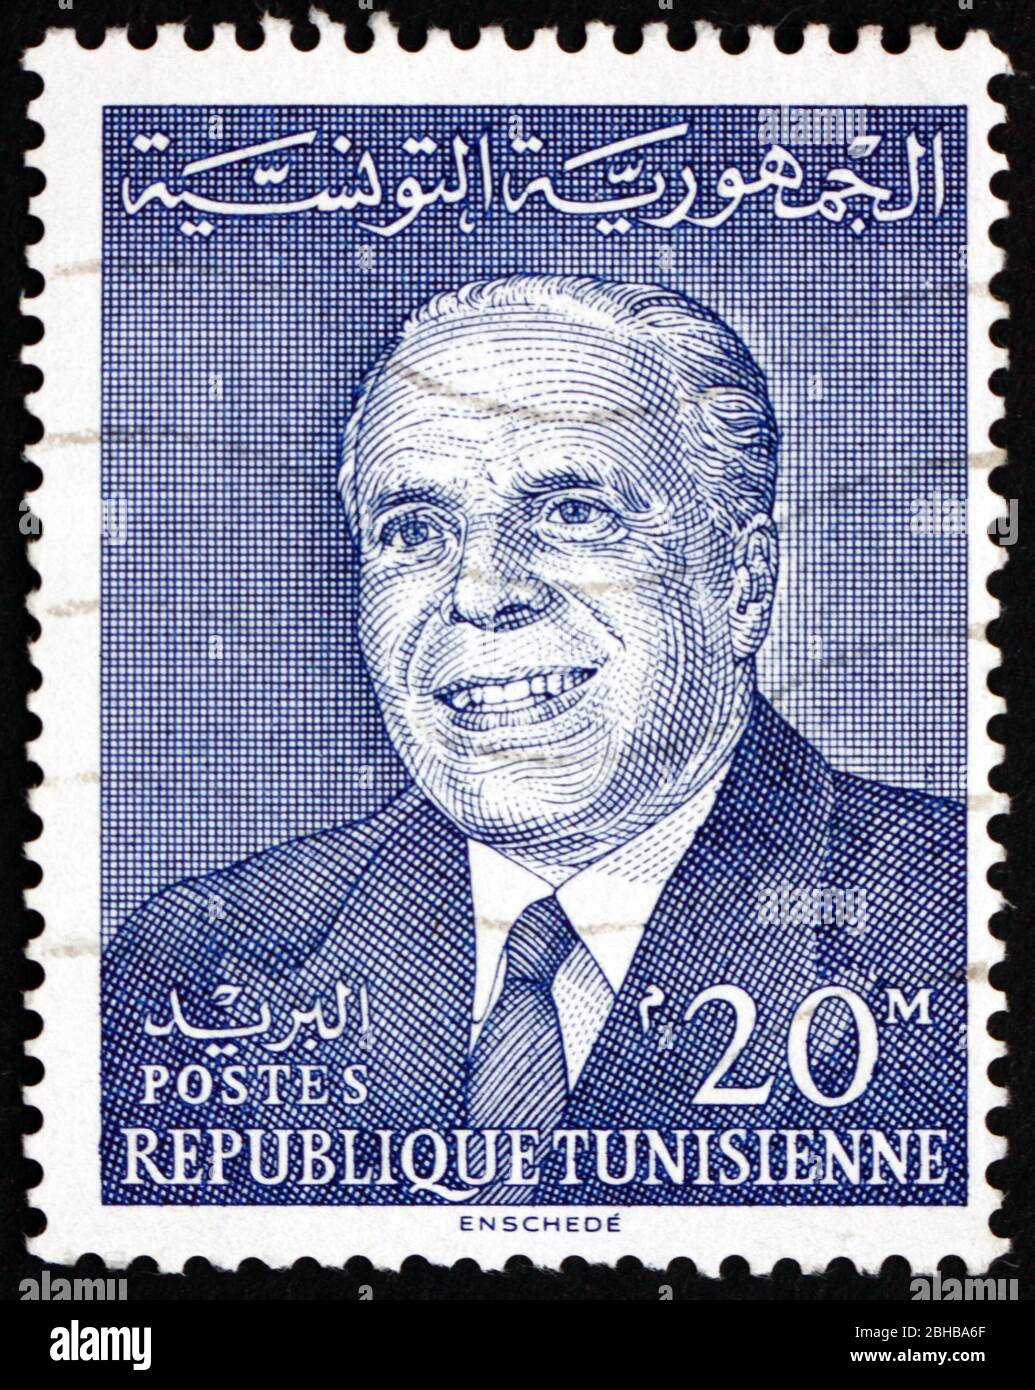 TÚNEZ - ALREDEDOR de 1964: Un sello impreso en Túnez muestra Habib Bourguiba, primer Presidente de la República de Túnez, alrededor de 1964 Foto de stock